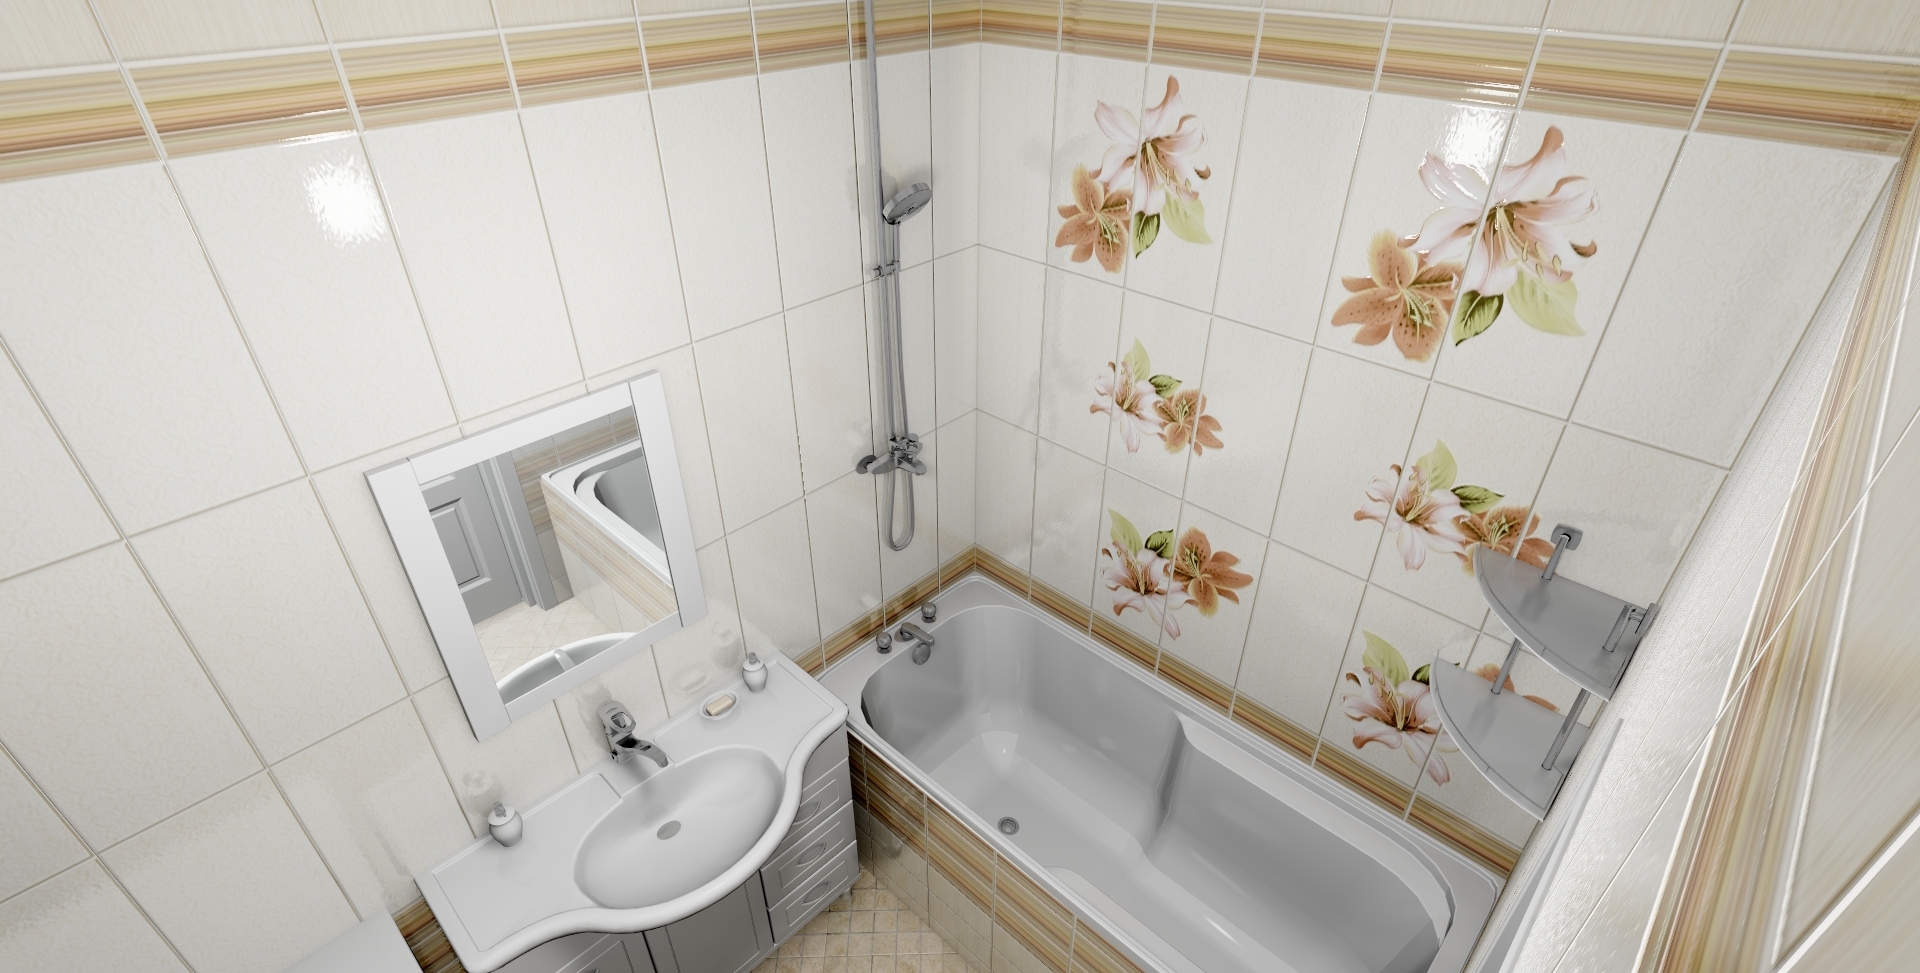 Влагостойкие стеновые панели для ванной комнаты: какие бывают разновидности влагоустойчивых материалов для стен и стоит ли применять такую отделку во влажных помещениях